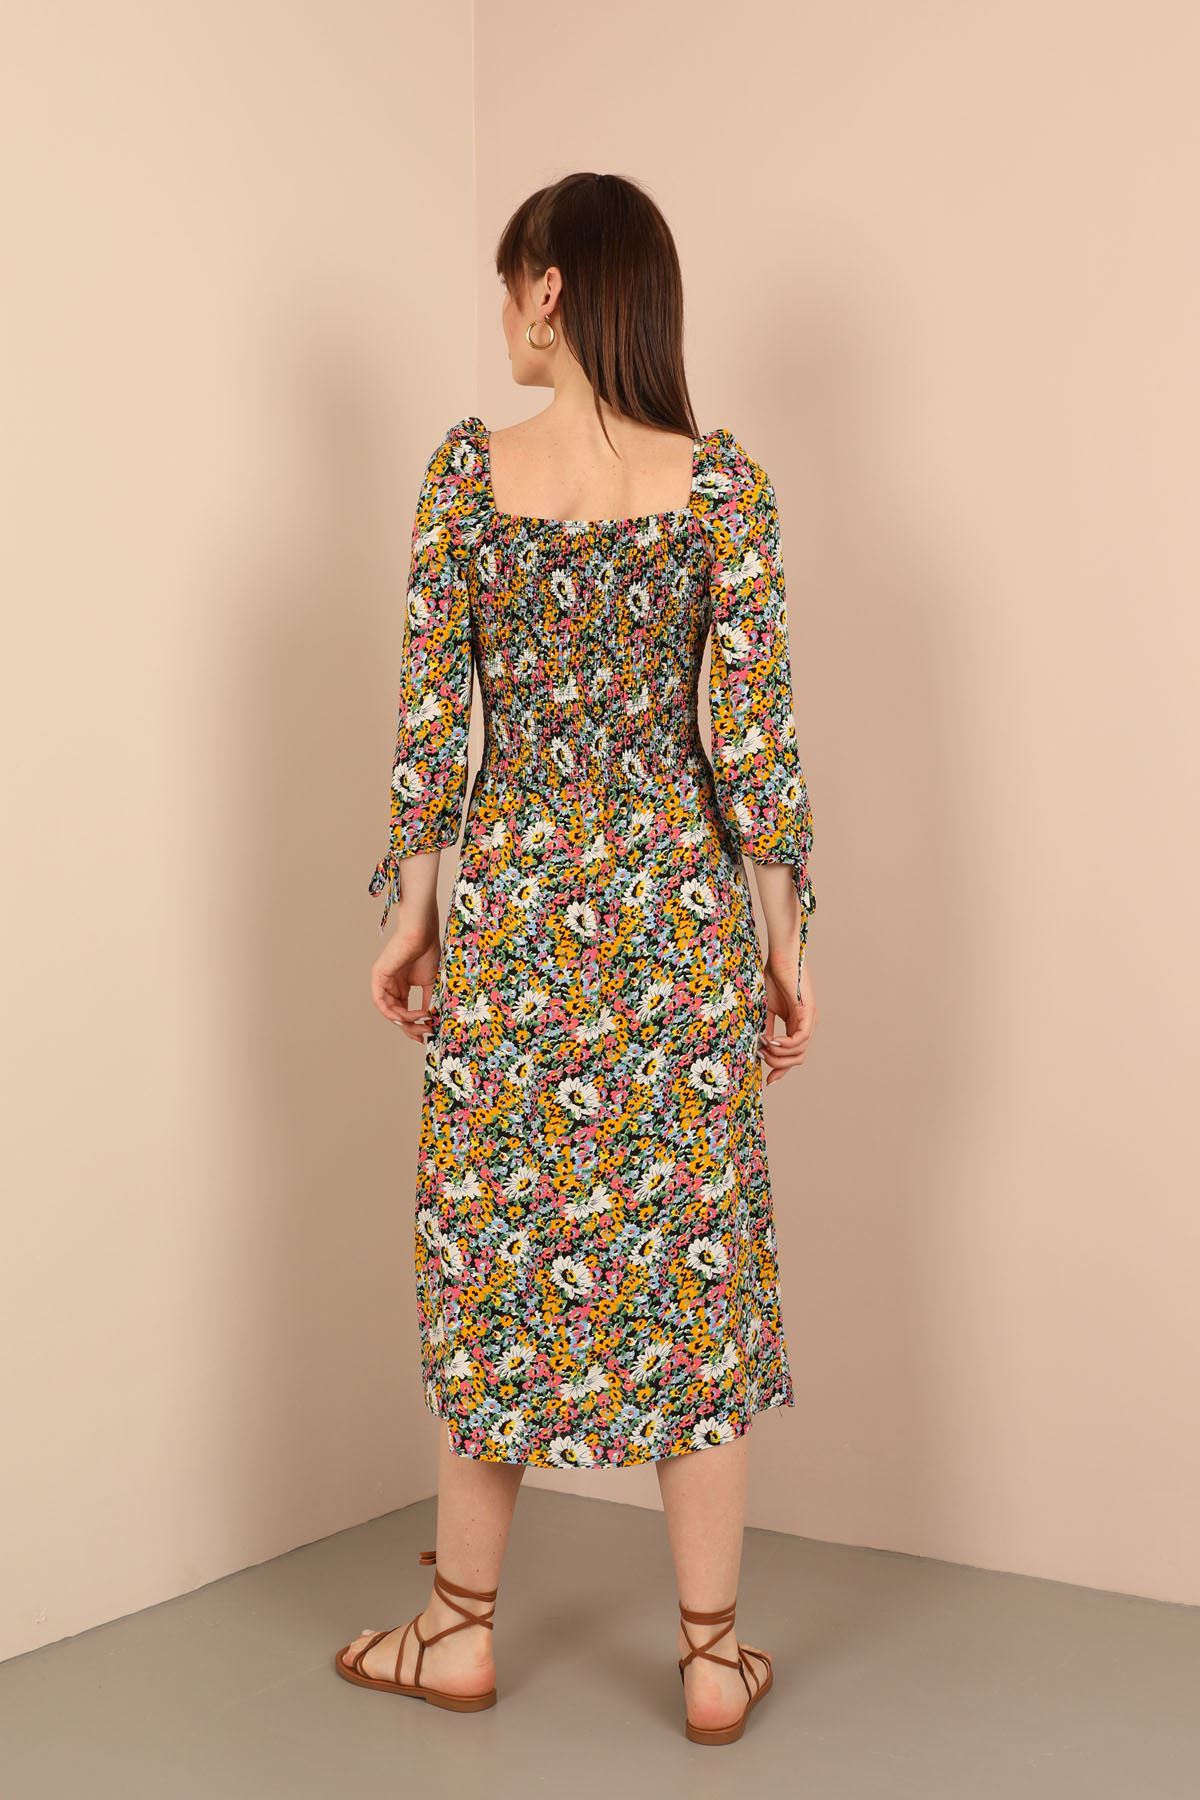 Viscose Fabric Square Neckline Midi Floral Print Women Dress - Mustard